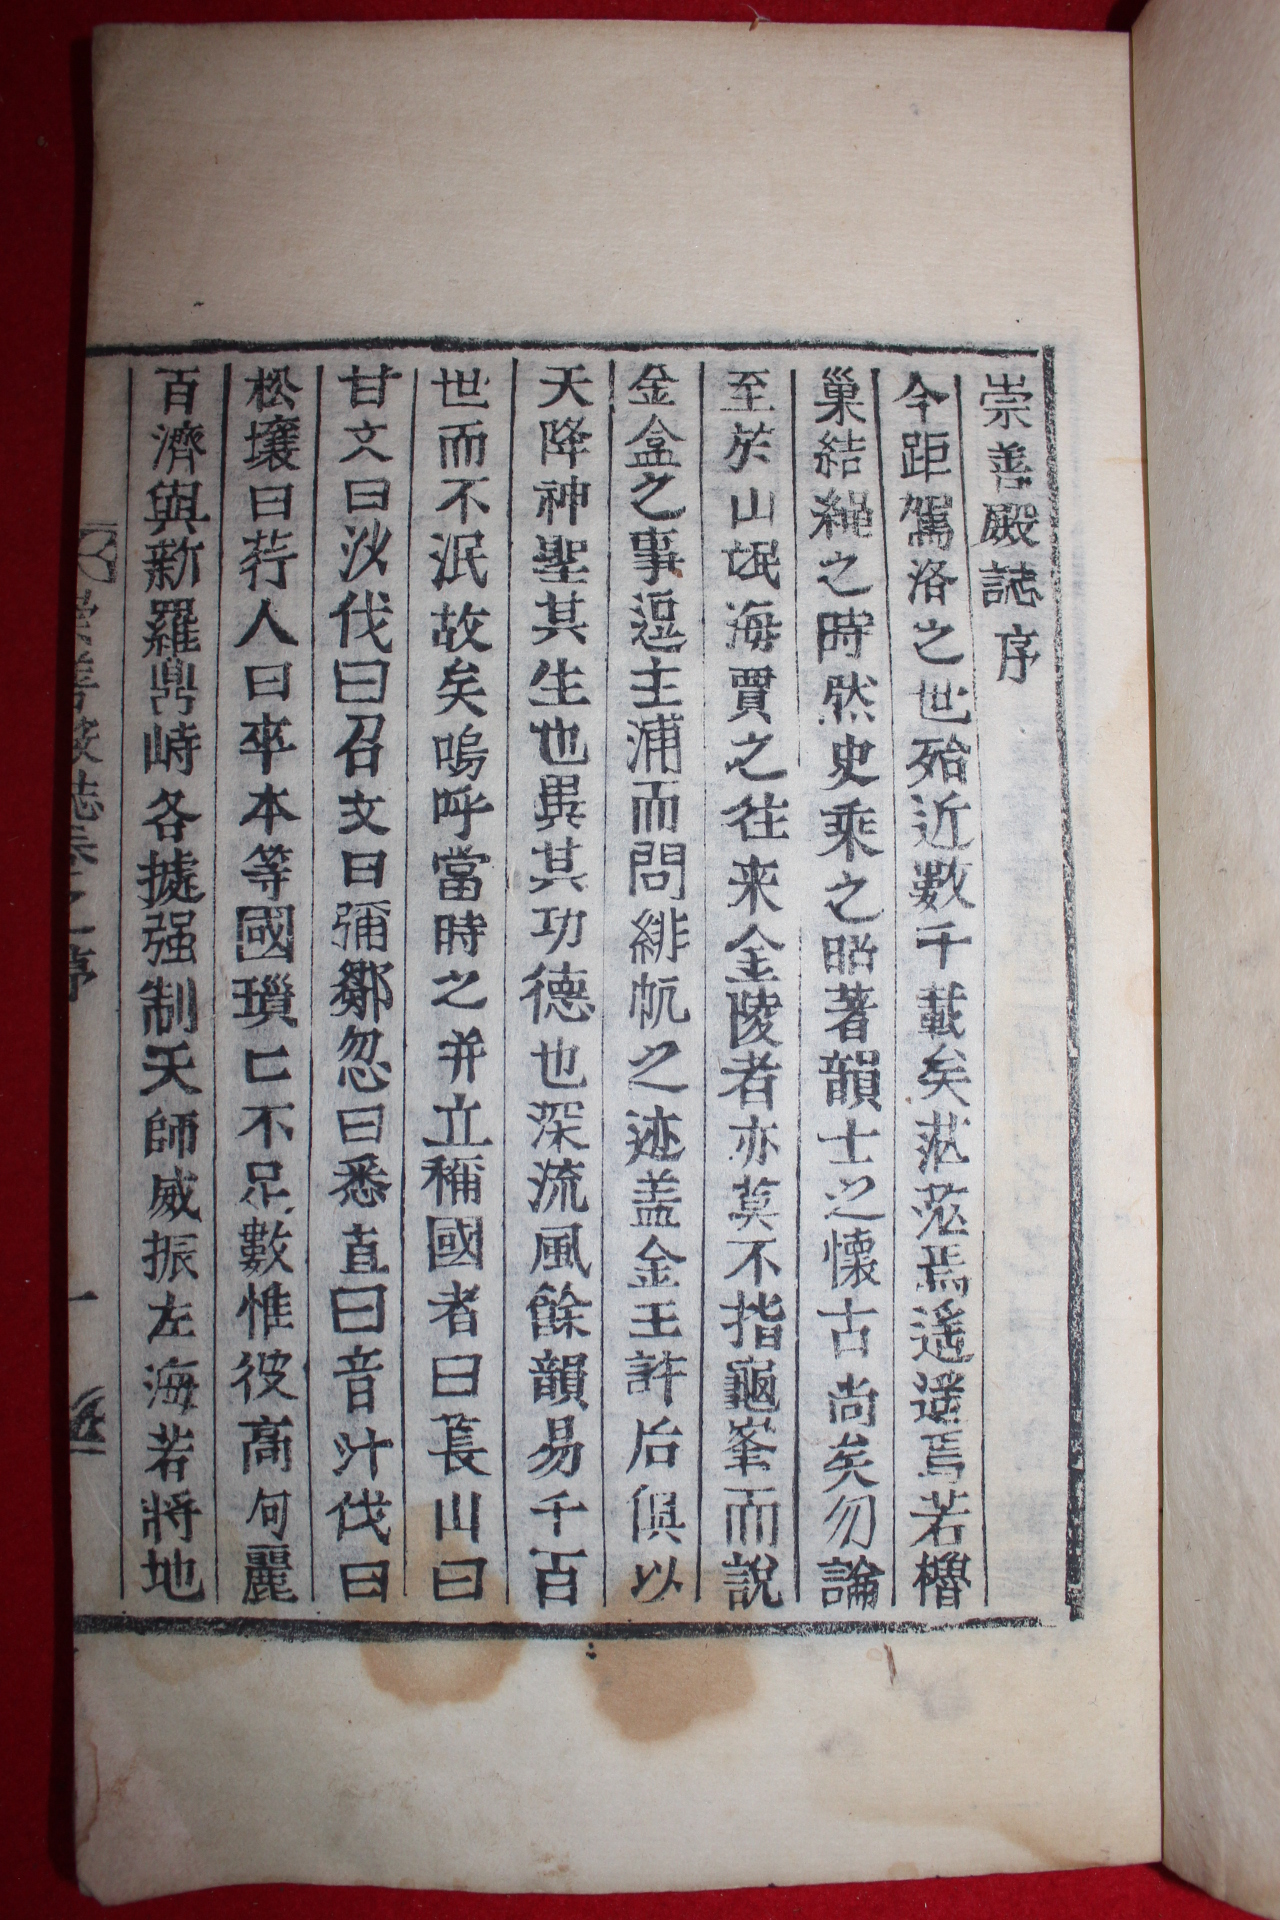 1903년 목활자본 허식編 숭선전지(崇善殿誌)권1,2  1책